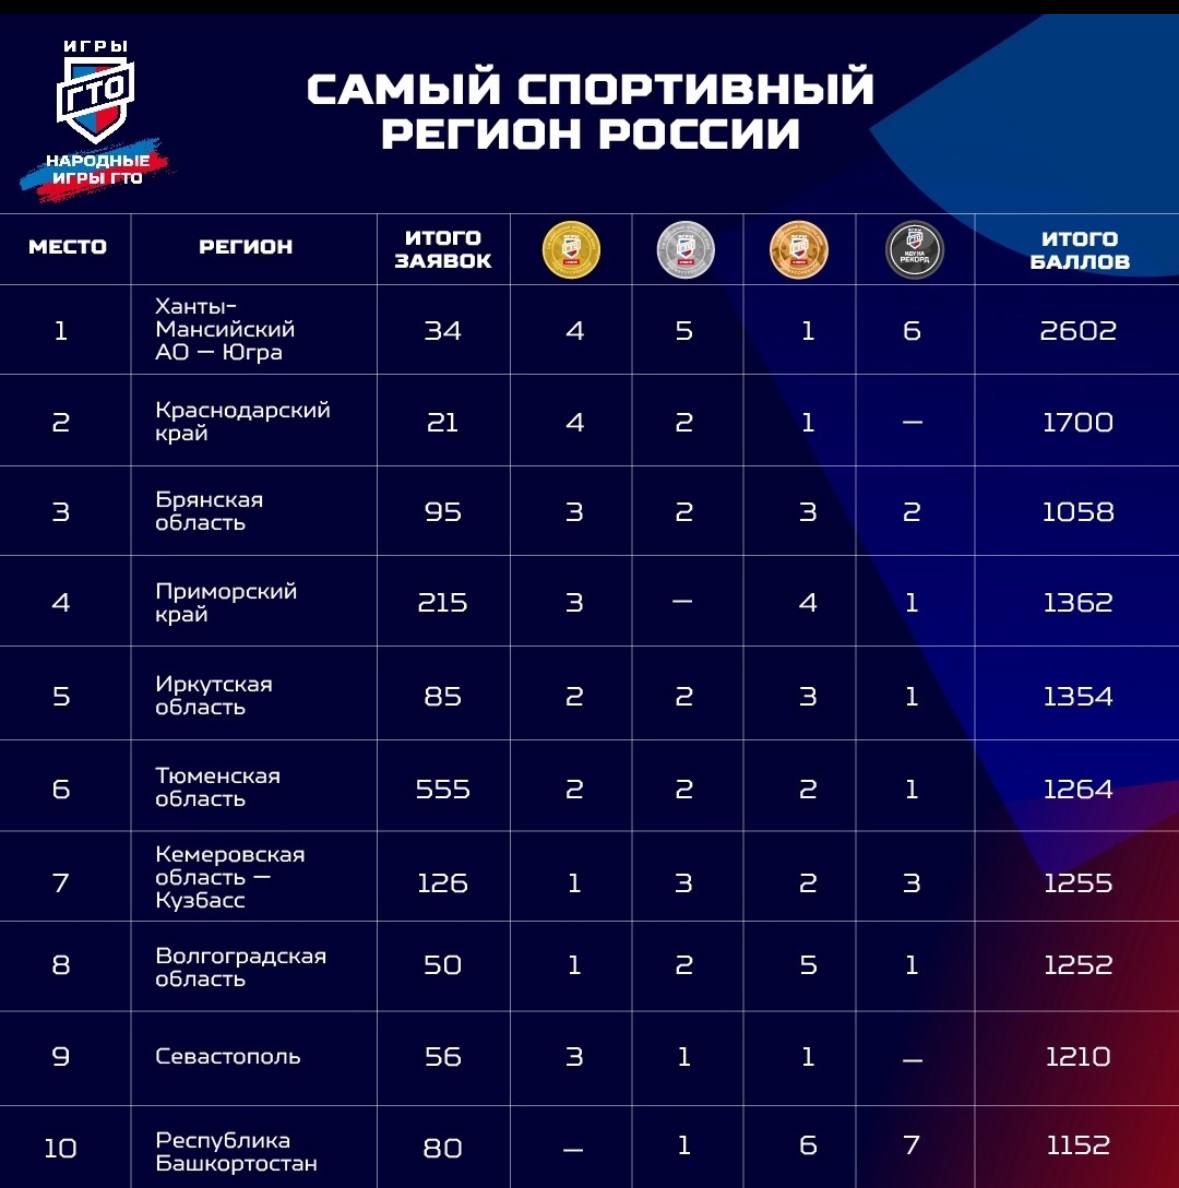 Среди самых спортивных регионов России Брянская область третья сверху